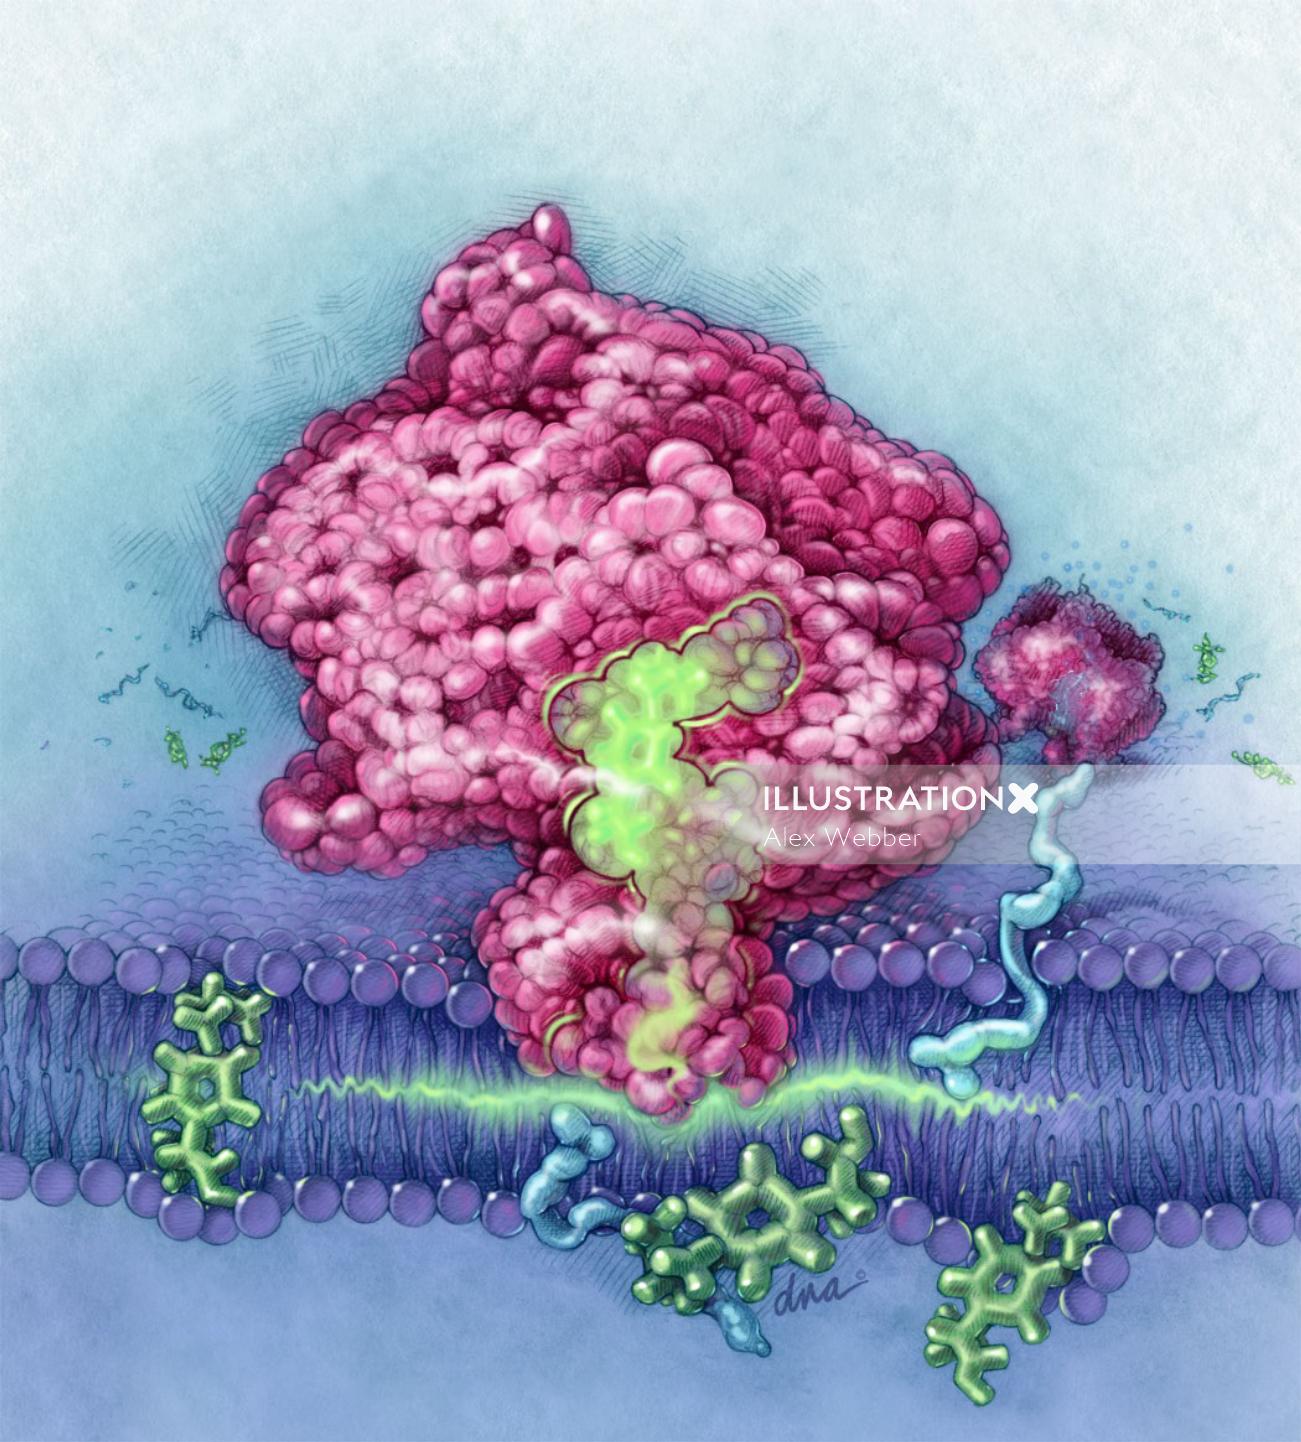 Mecanismo de ilustração da molécula AINE por AlexBaker